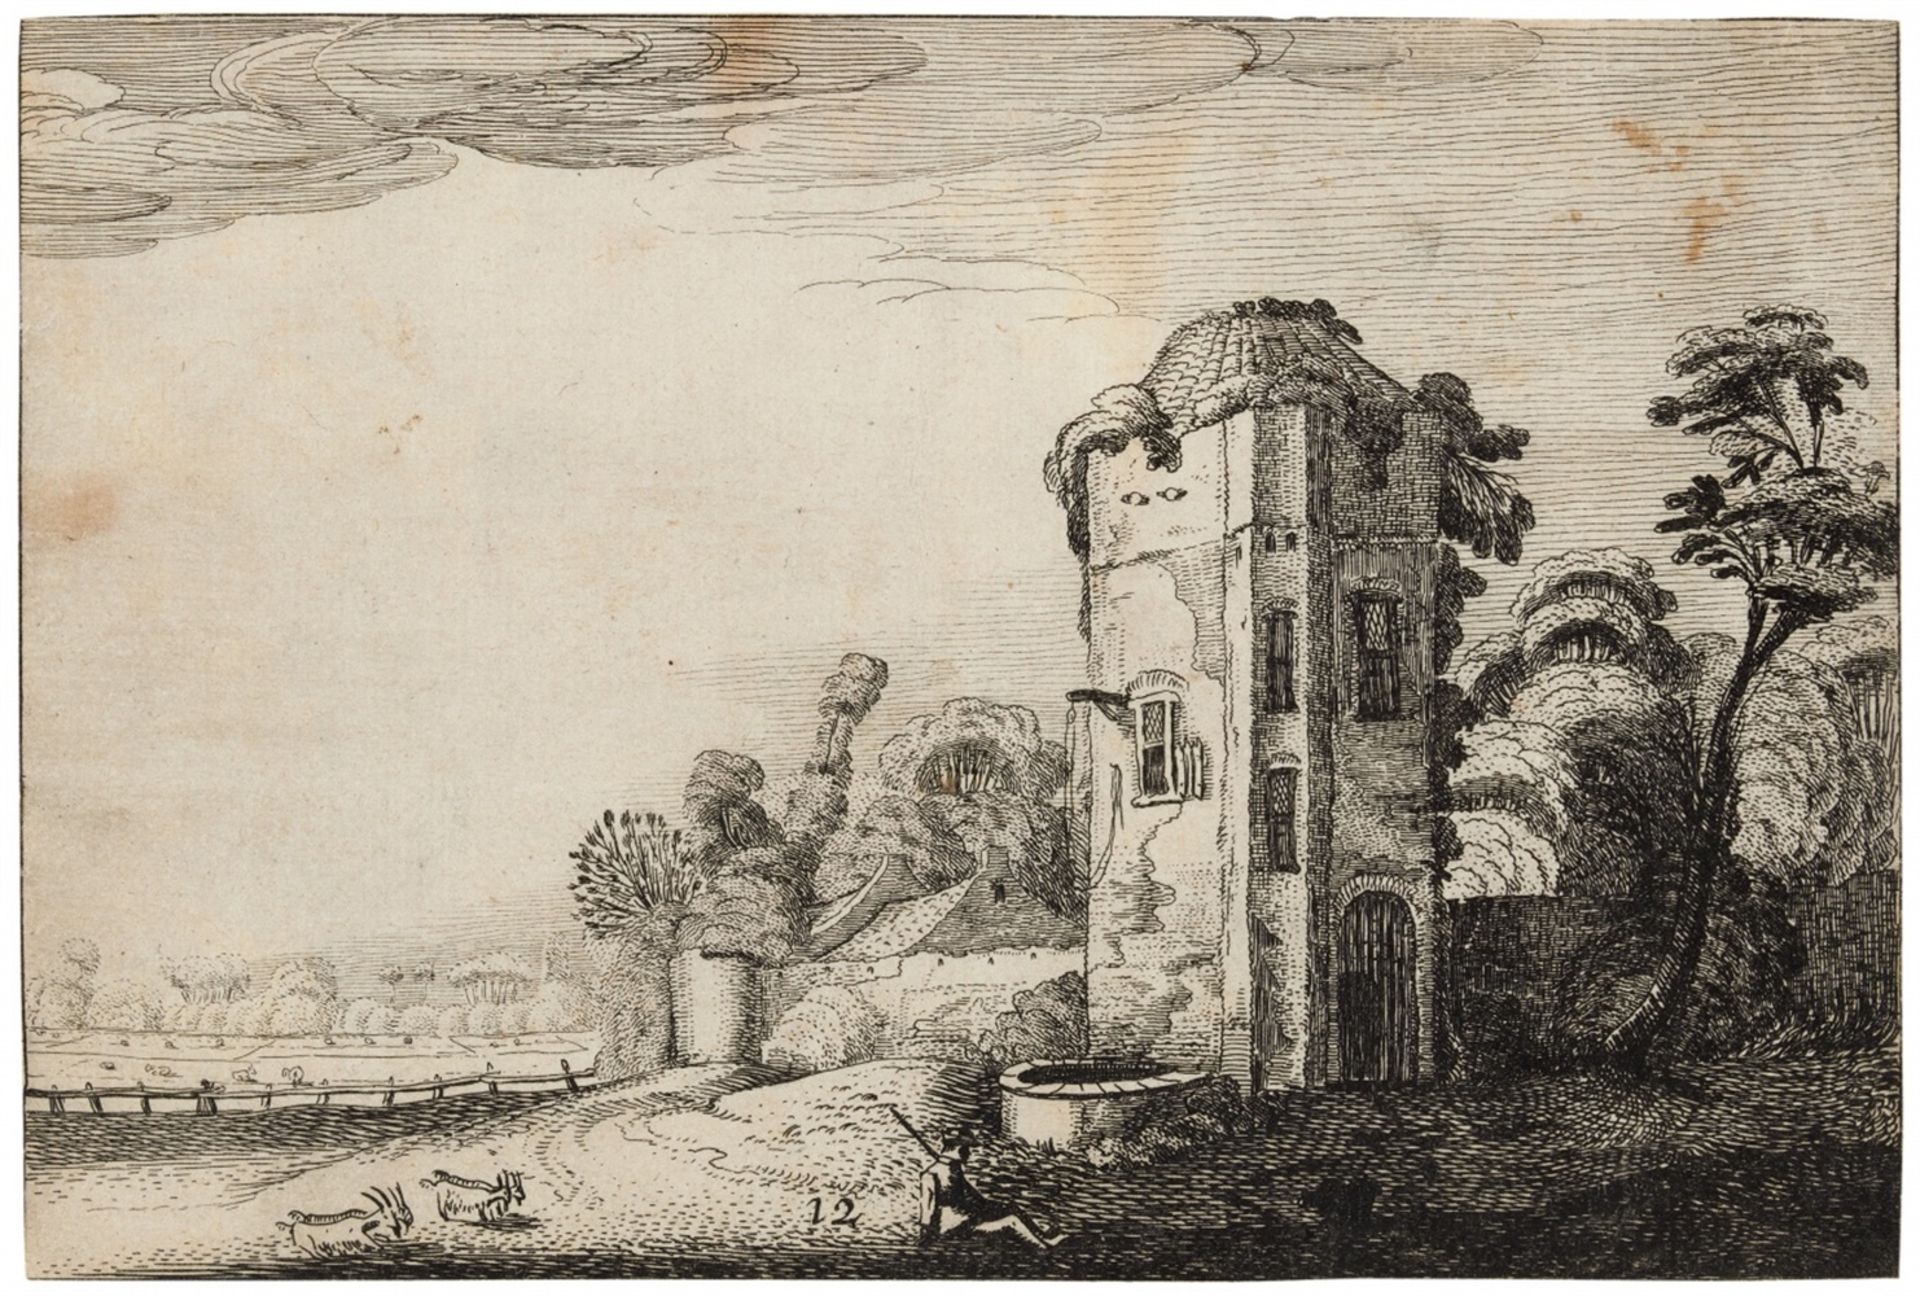 JAN VAN DE VELDE II Delft 1593 – 1641 Enkhuizen Turm mit Brunnen.1616. Radierung auf Bütten, aus